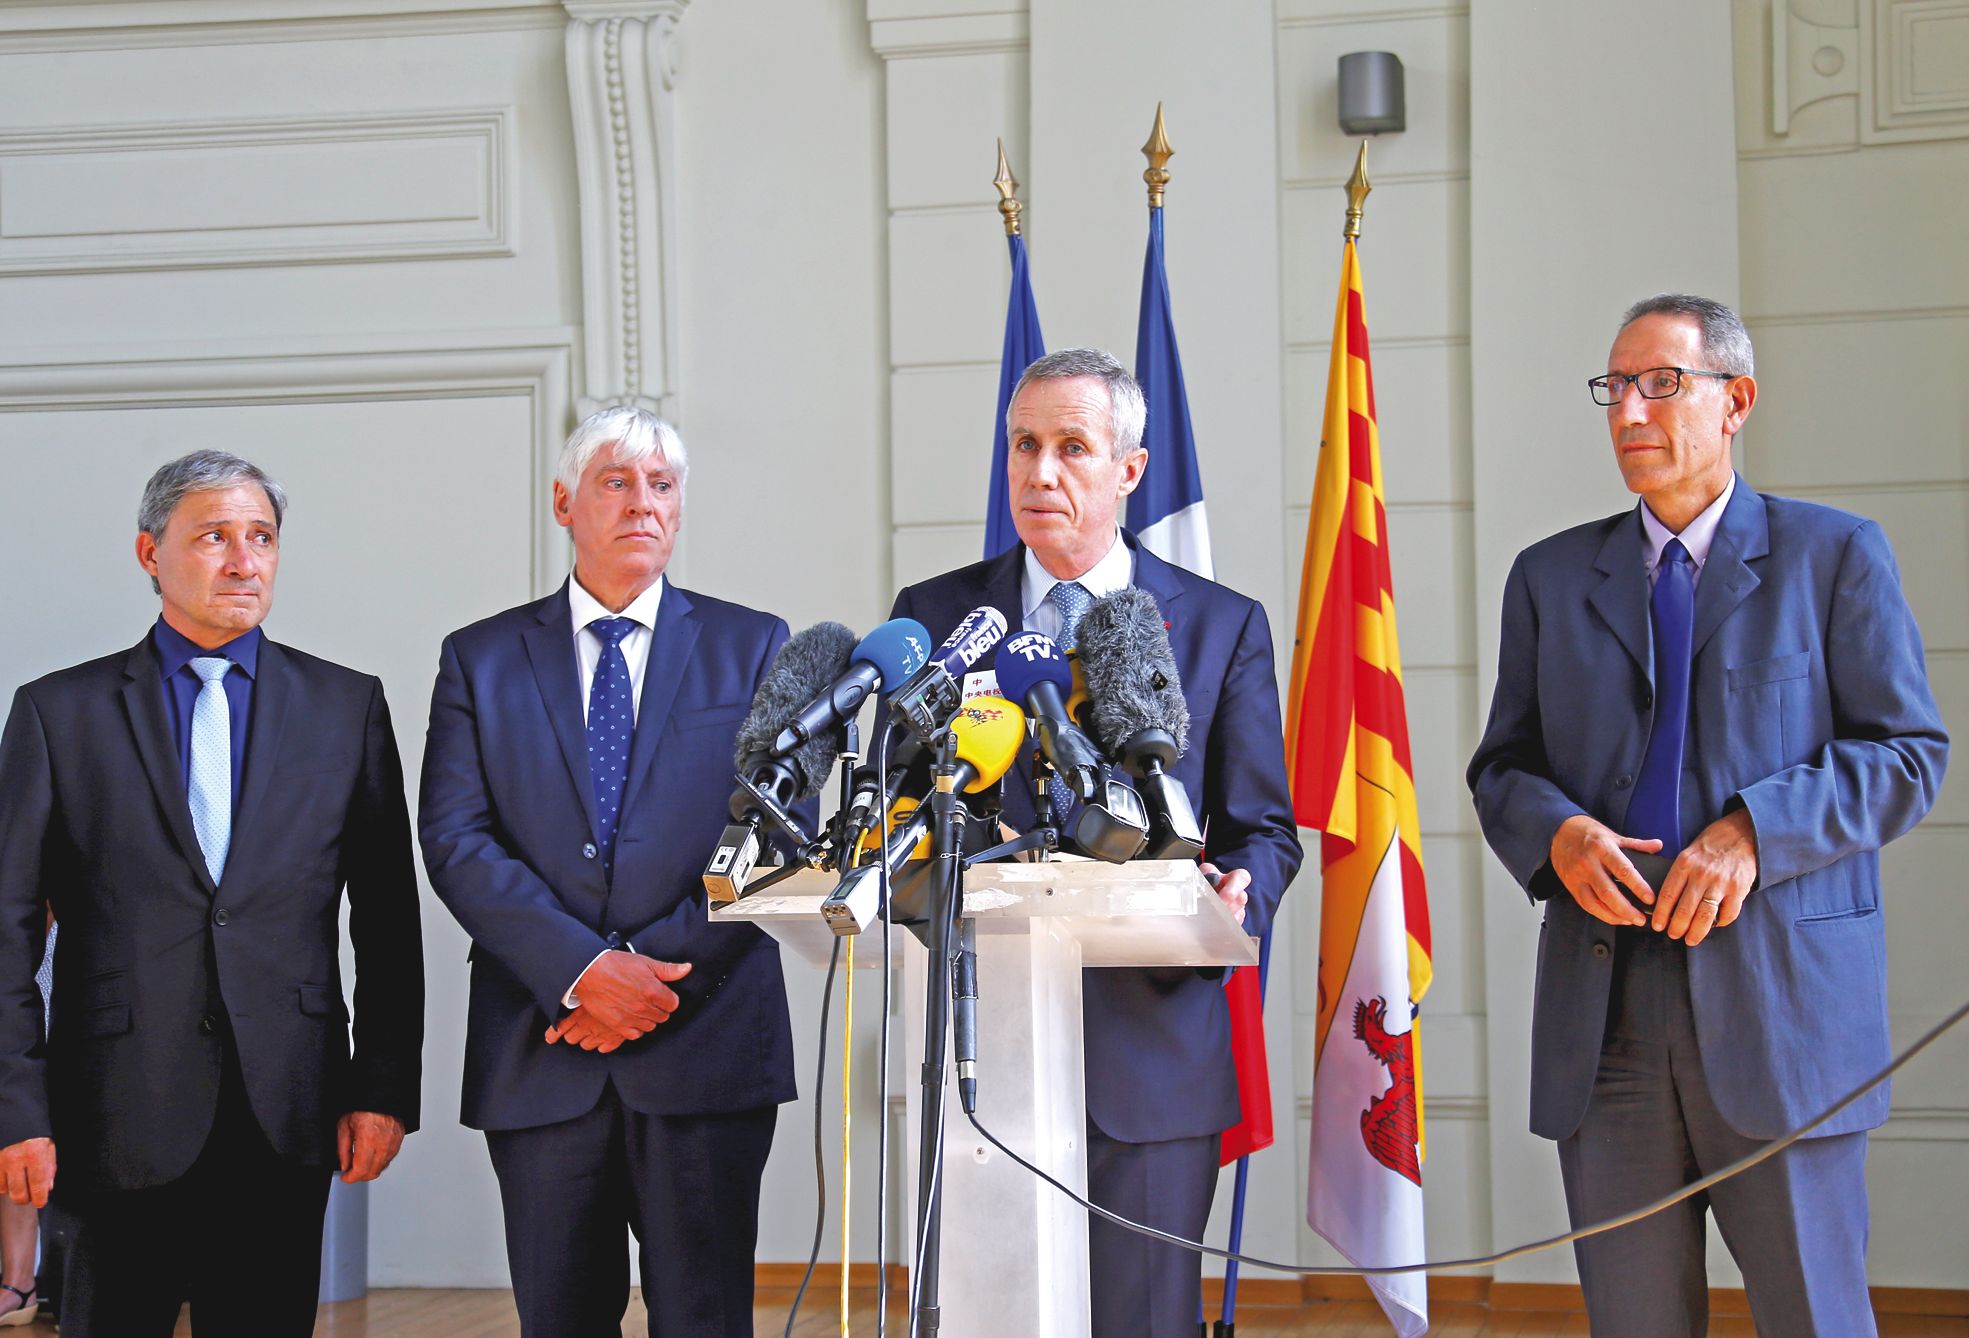 Le procureur de Paris depuis 2011, François Molins, a tenu une conférence de presse au Palais de justice de Nice, vendredi. Le parquet de Paris, qui a compétence nationale pour les affaires antiterroristes, a été saisi de l’enquête.